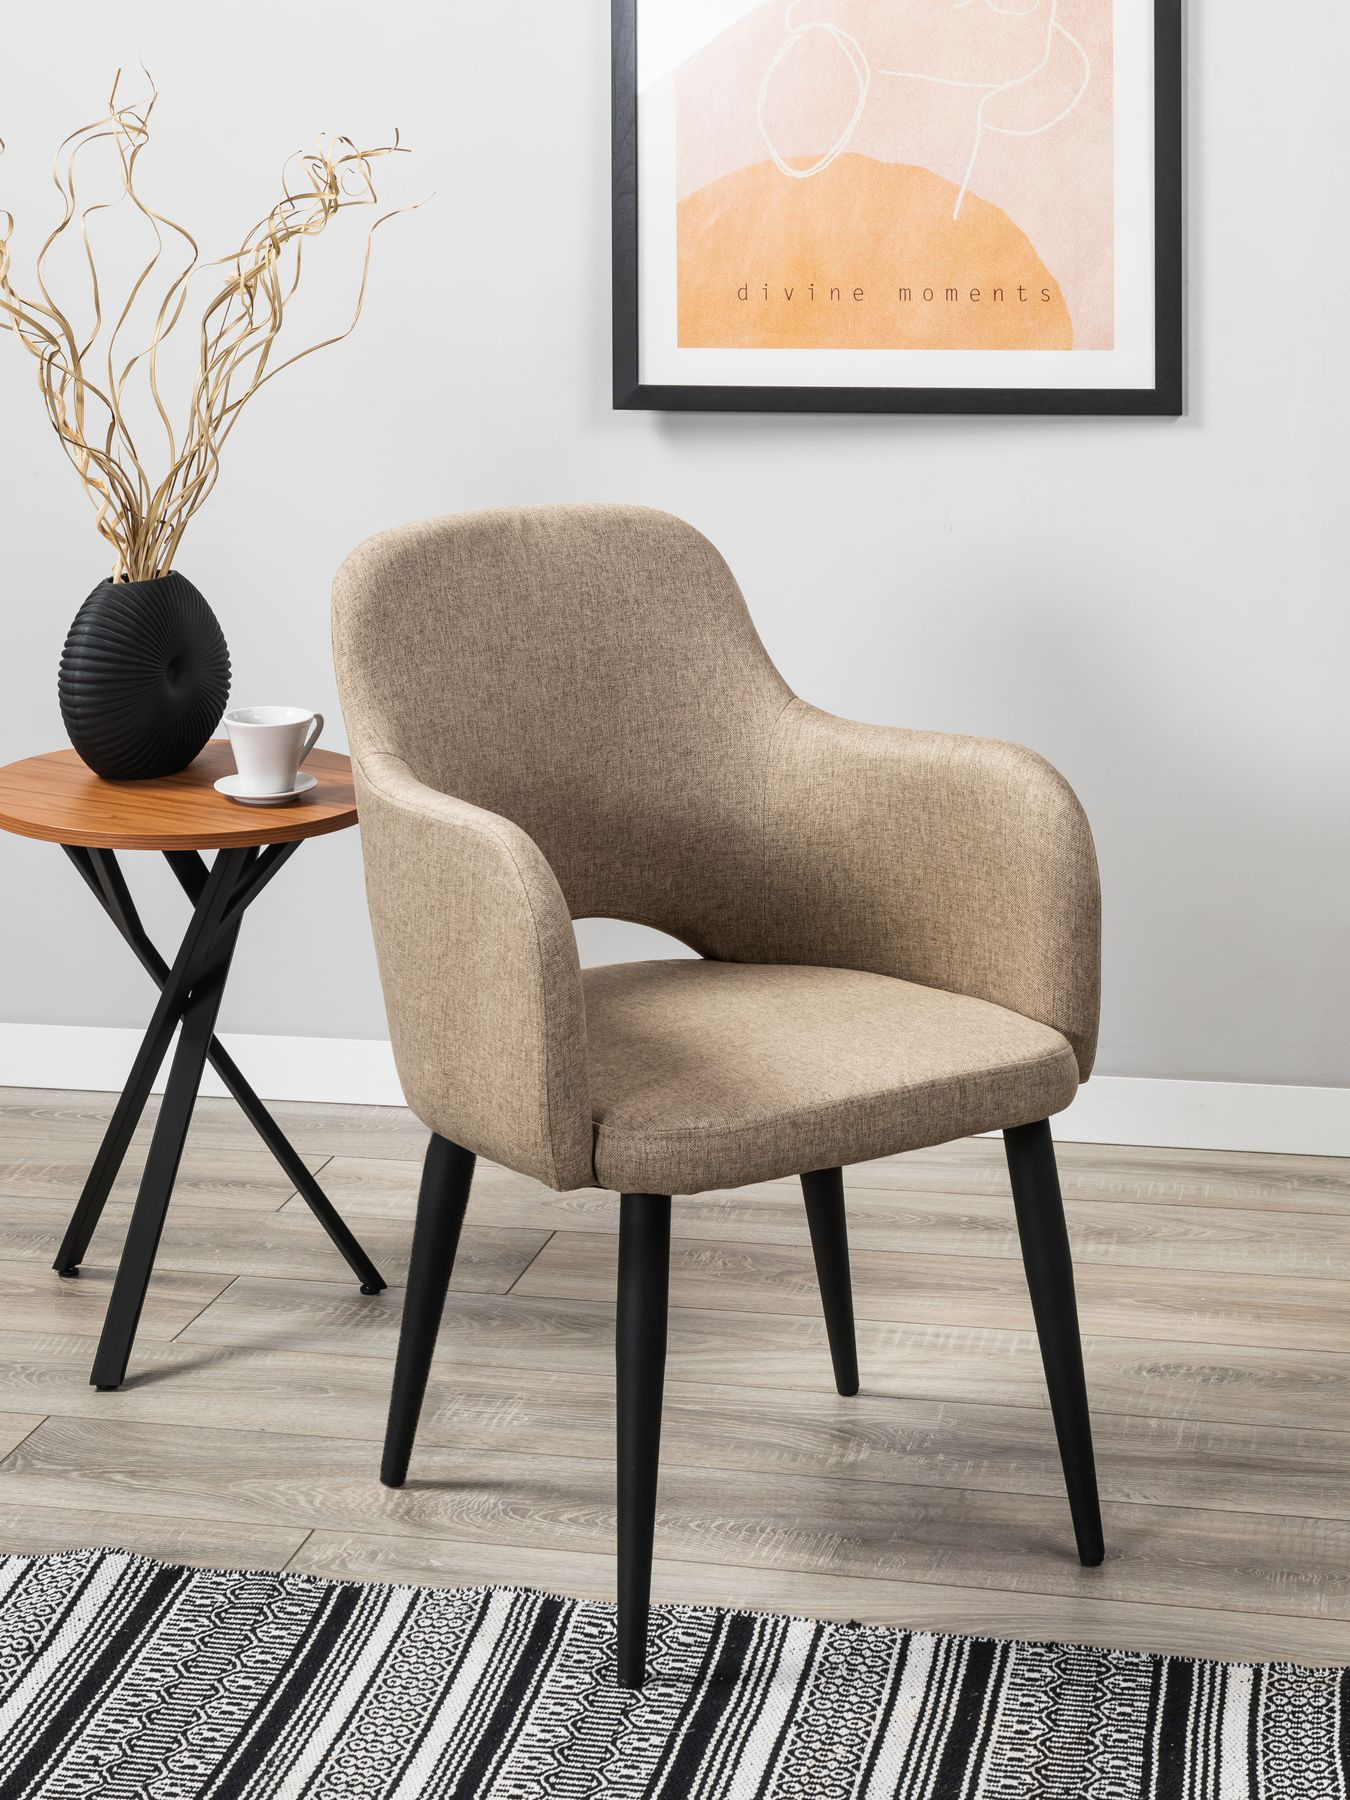 Кресло R-Home Ledger Сканди, размер 56.5x60.5x87.5 см, цвет: Браун Чёрн(41012440_БраунЧерн)41012440_БраунЧерн